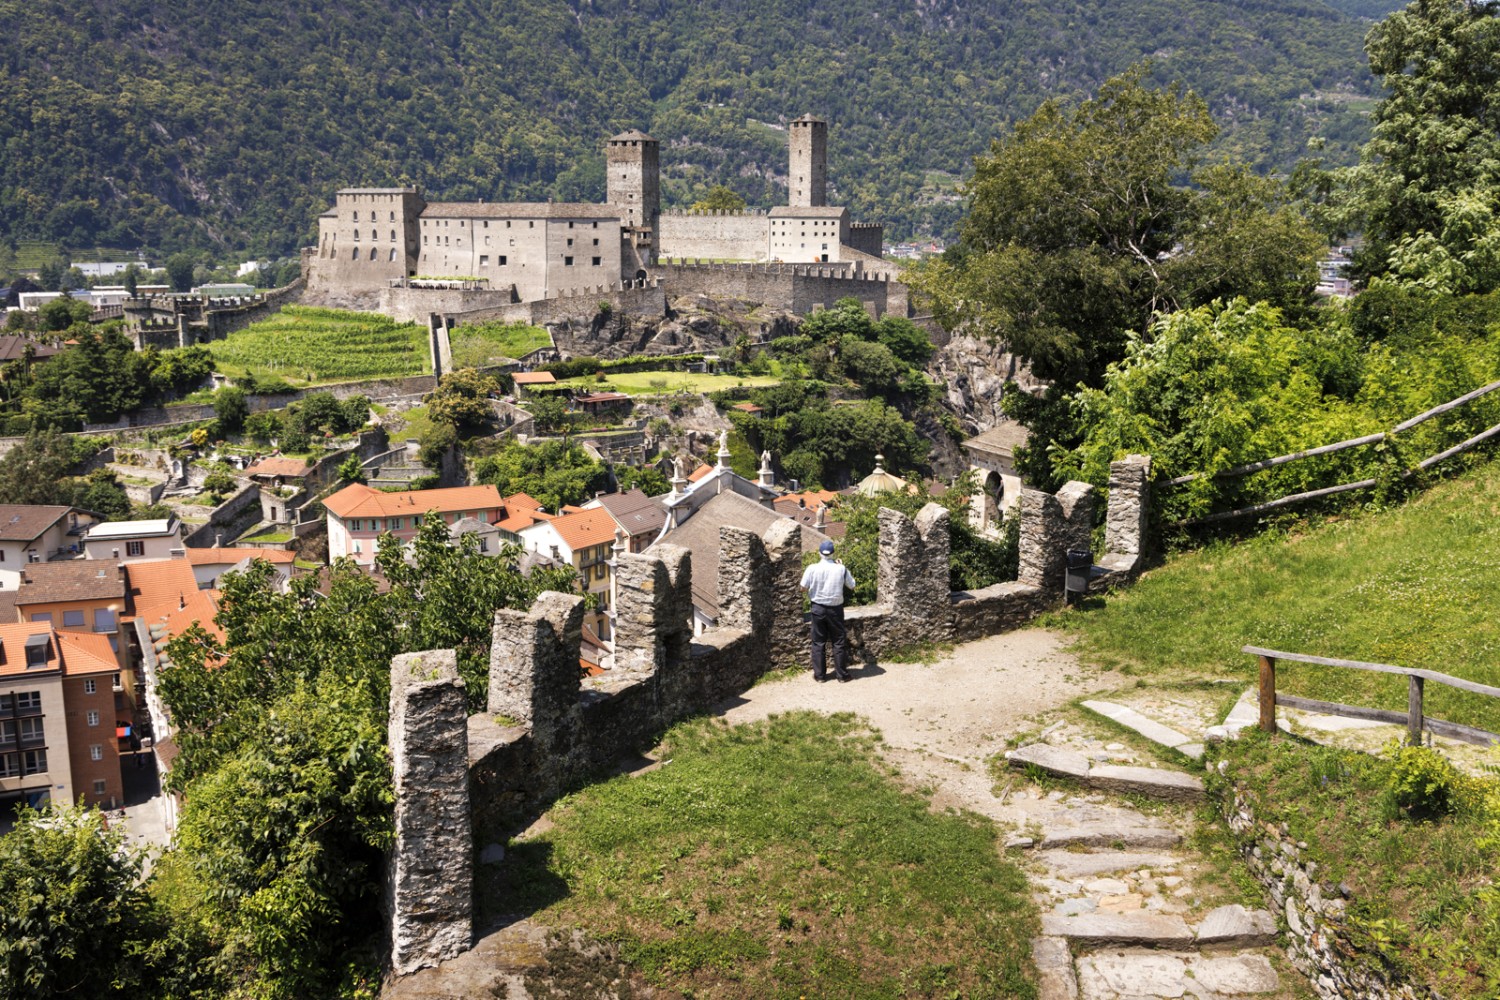 Die drei Burgen von Bellinzona gehören seit 2020 zum Unesco-Weltkulturerbe. Bild: Severin Nowacki